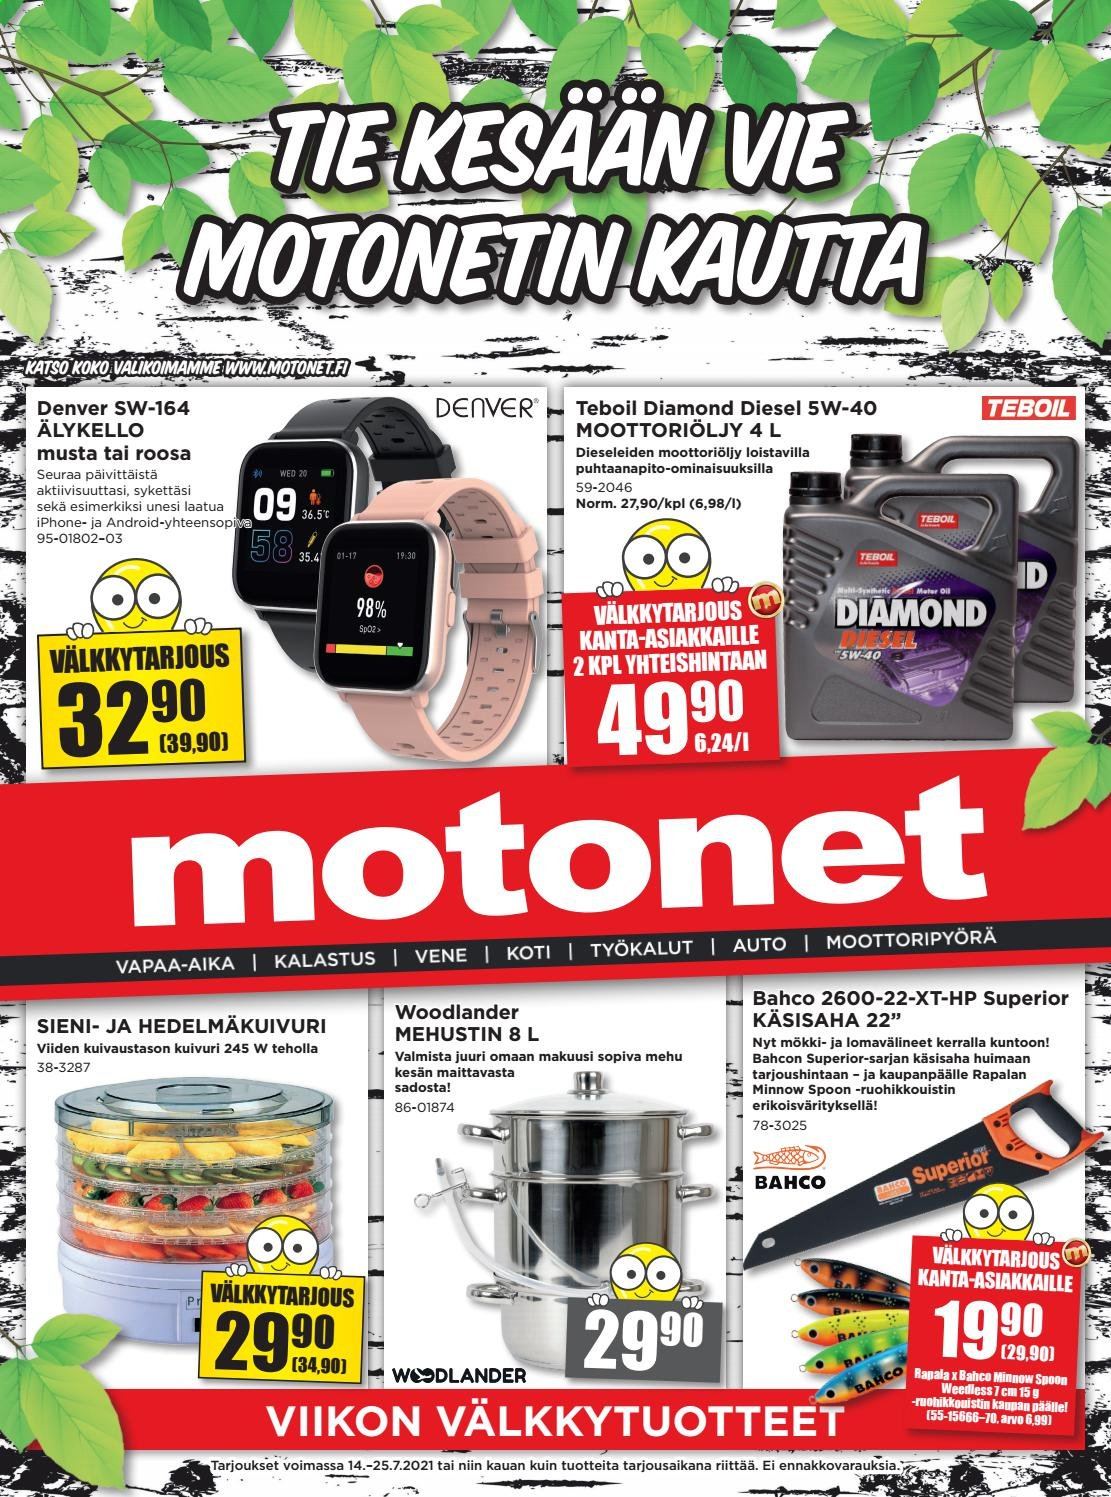 thumbnail - Motonet tarjoukset  - 14.07.2021 - 25.07.2021 - Tarjoustuotteet - käsisaha. Sivu 1.